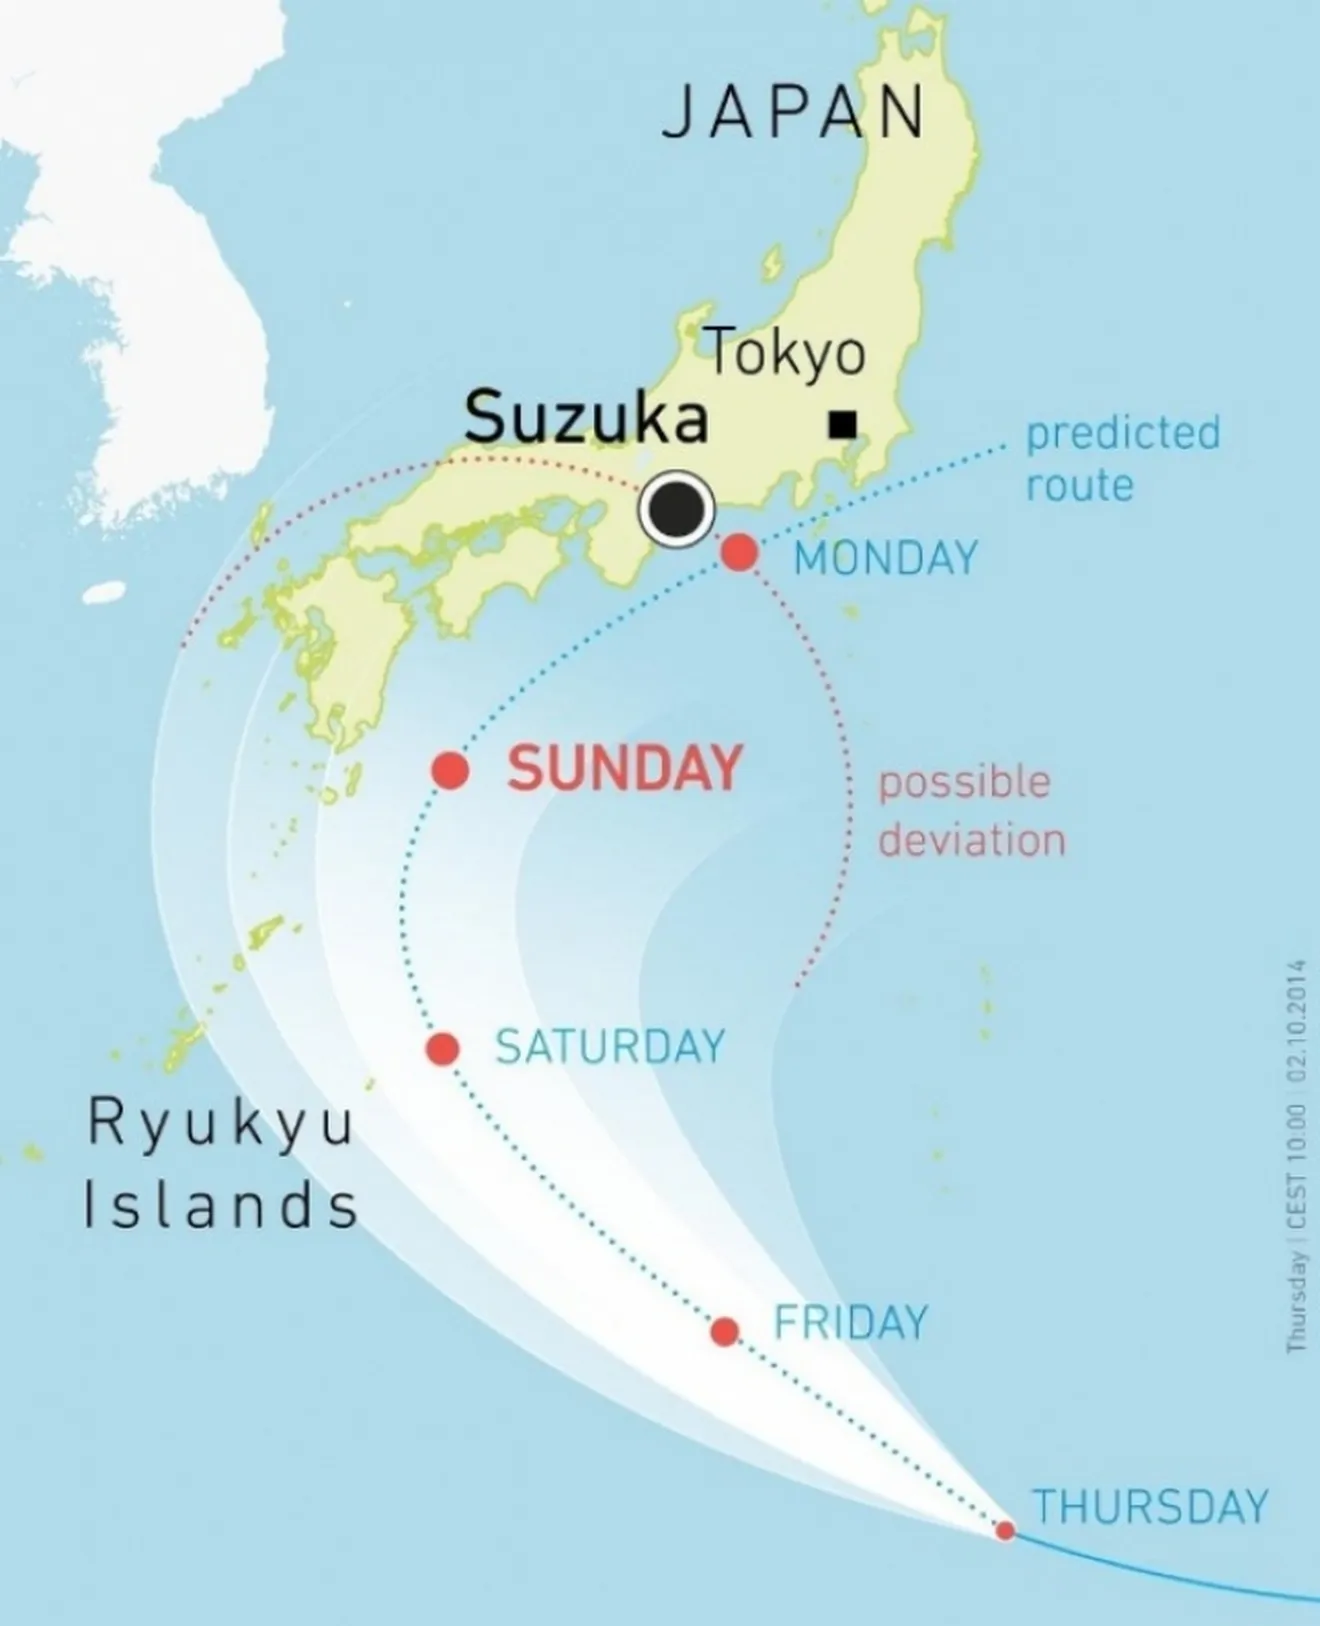 Previsión meteorológica en Suzuka, posible tifón el domingo